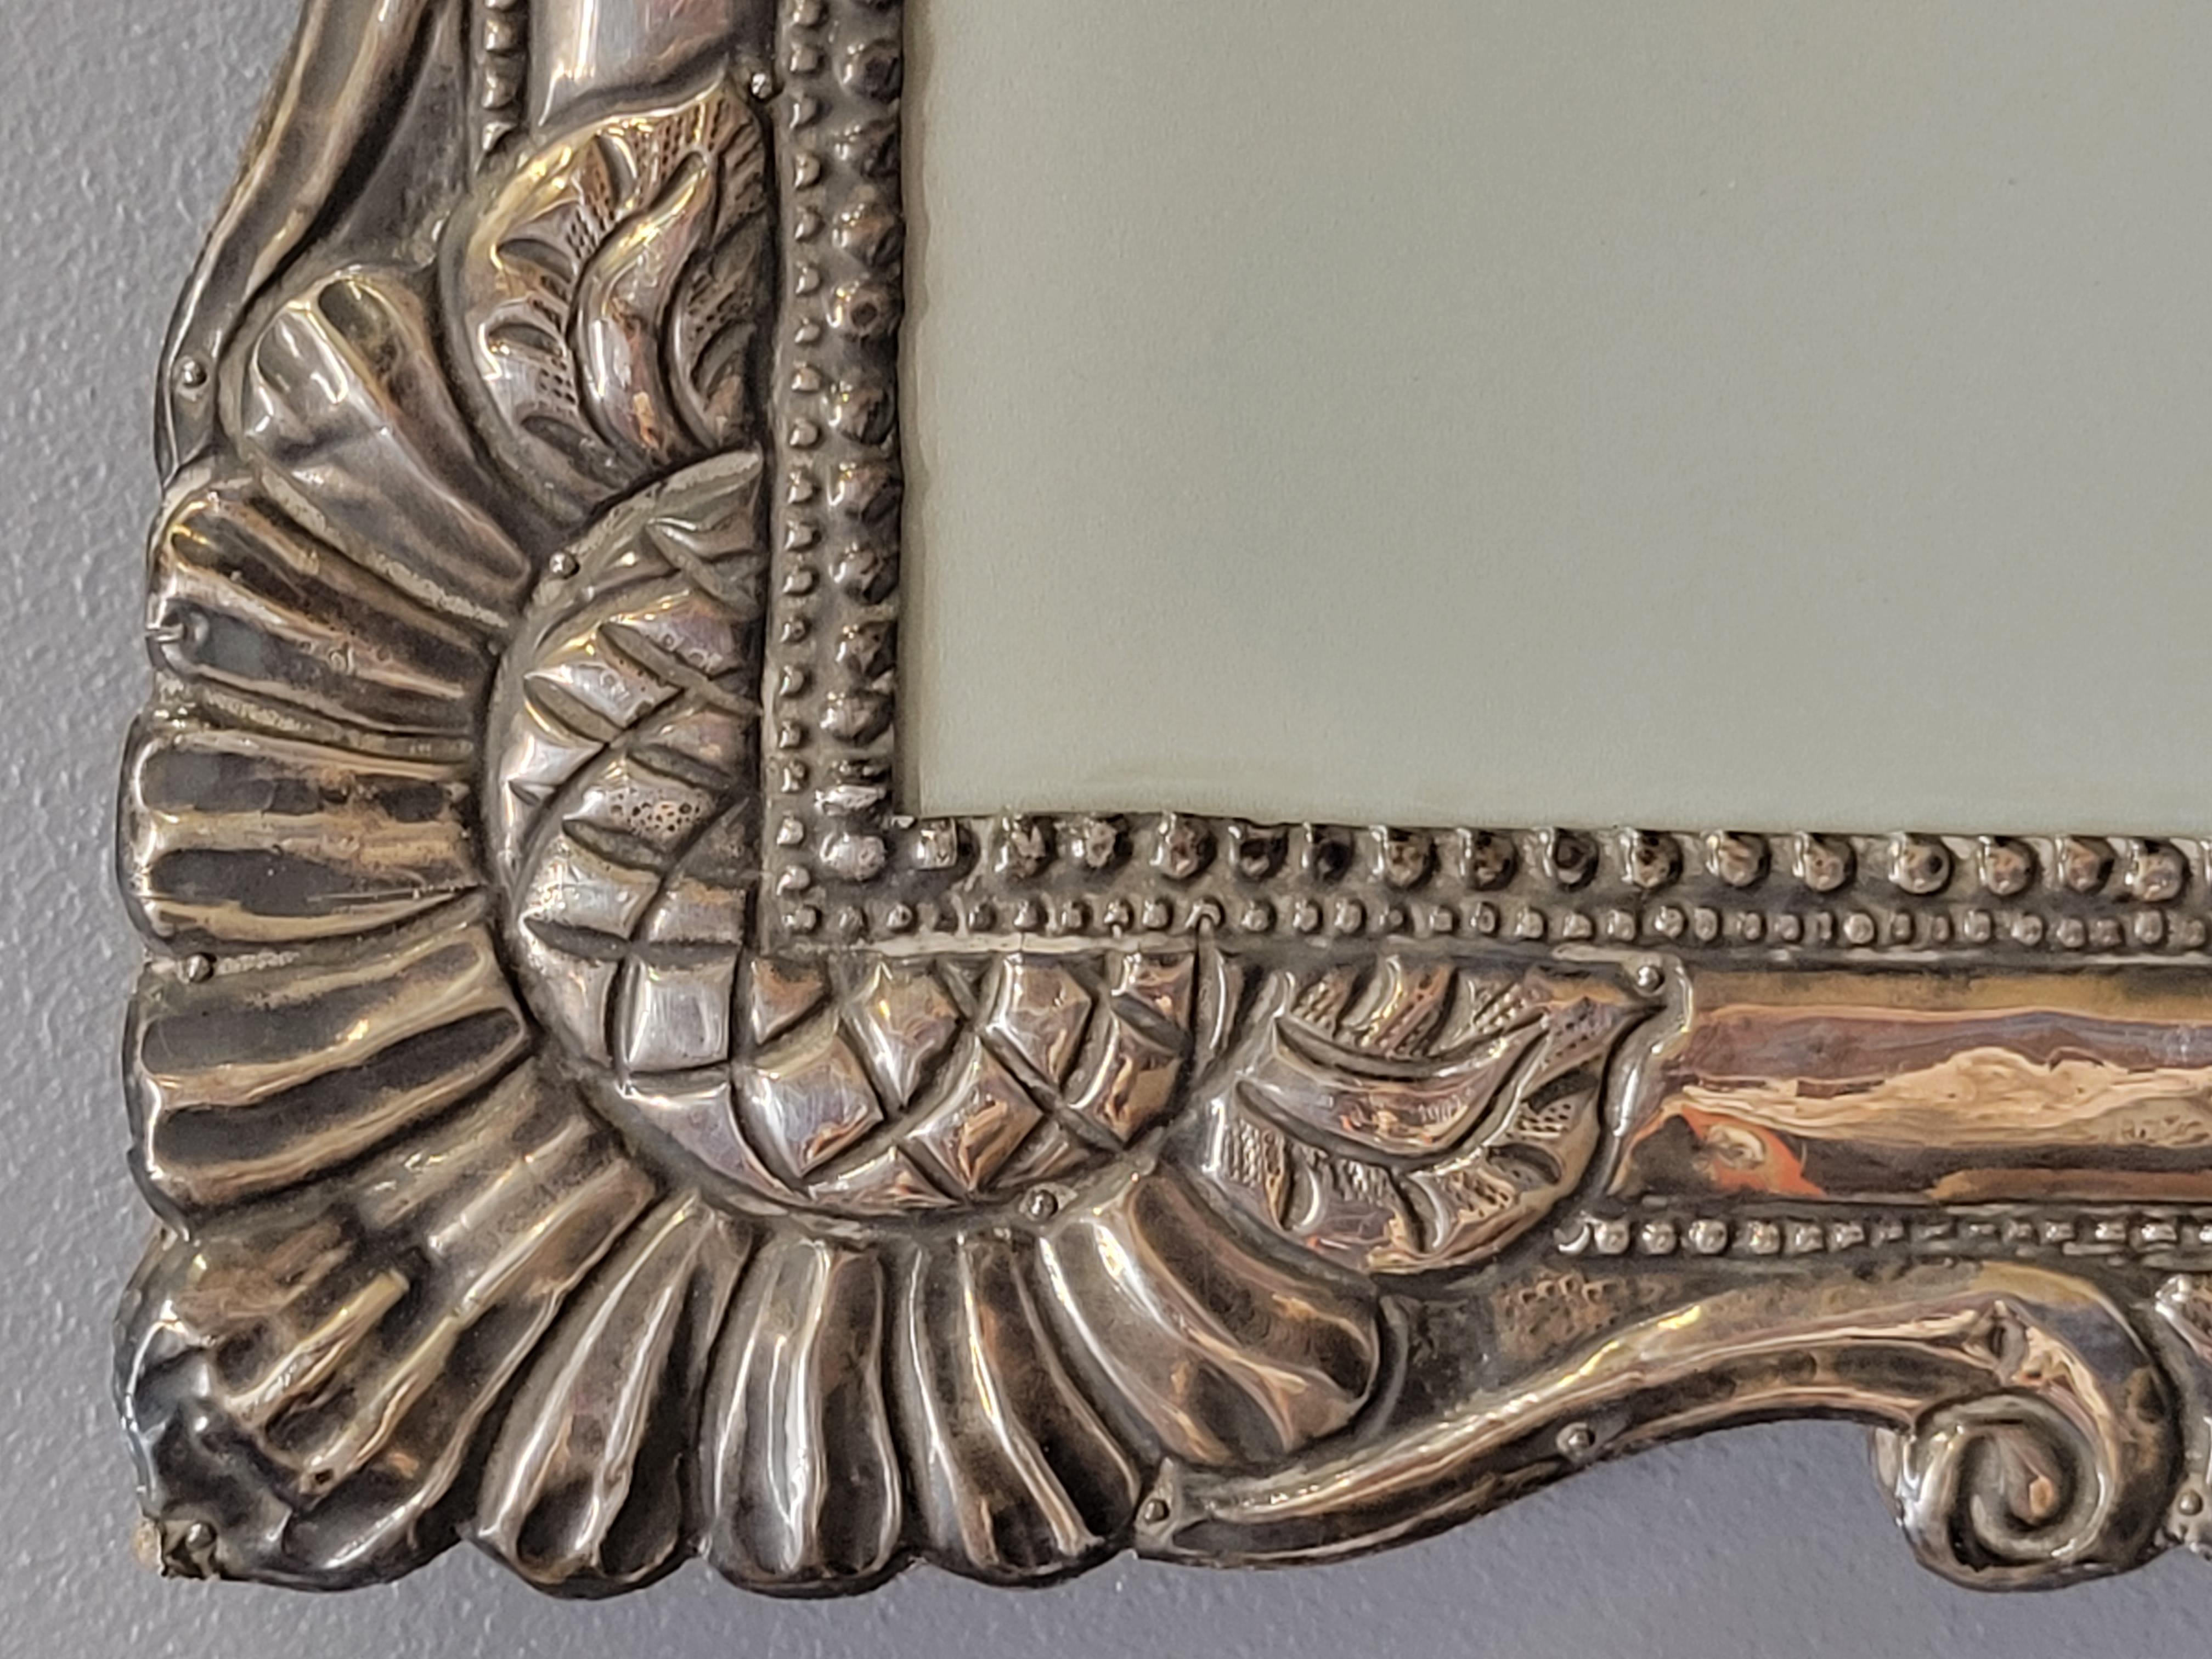 Ein absolut atemberaubender antiker barocker, handgehämmerter Bilderrahmen aus Sterlingsilber, der entweder vertikal oder horizontal aufgehängt werden kann. Wahrscheinlich aus Mexiko oder Südamerika, frühe 1900er Jahre oder vielleicht älter. Das